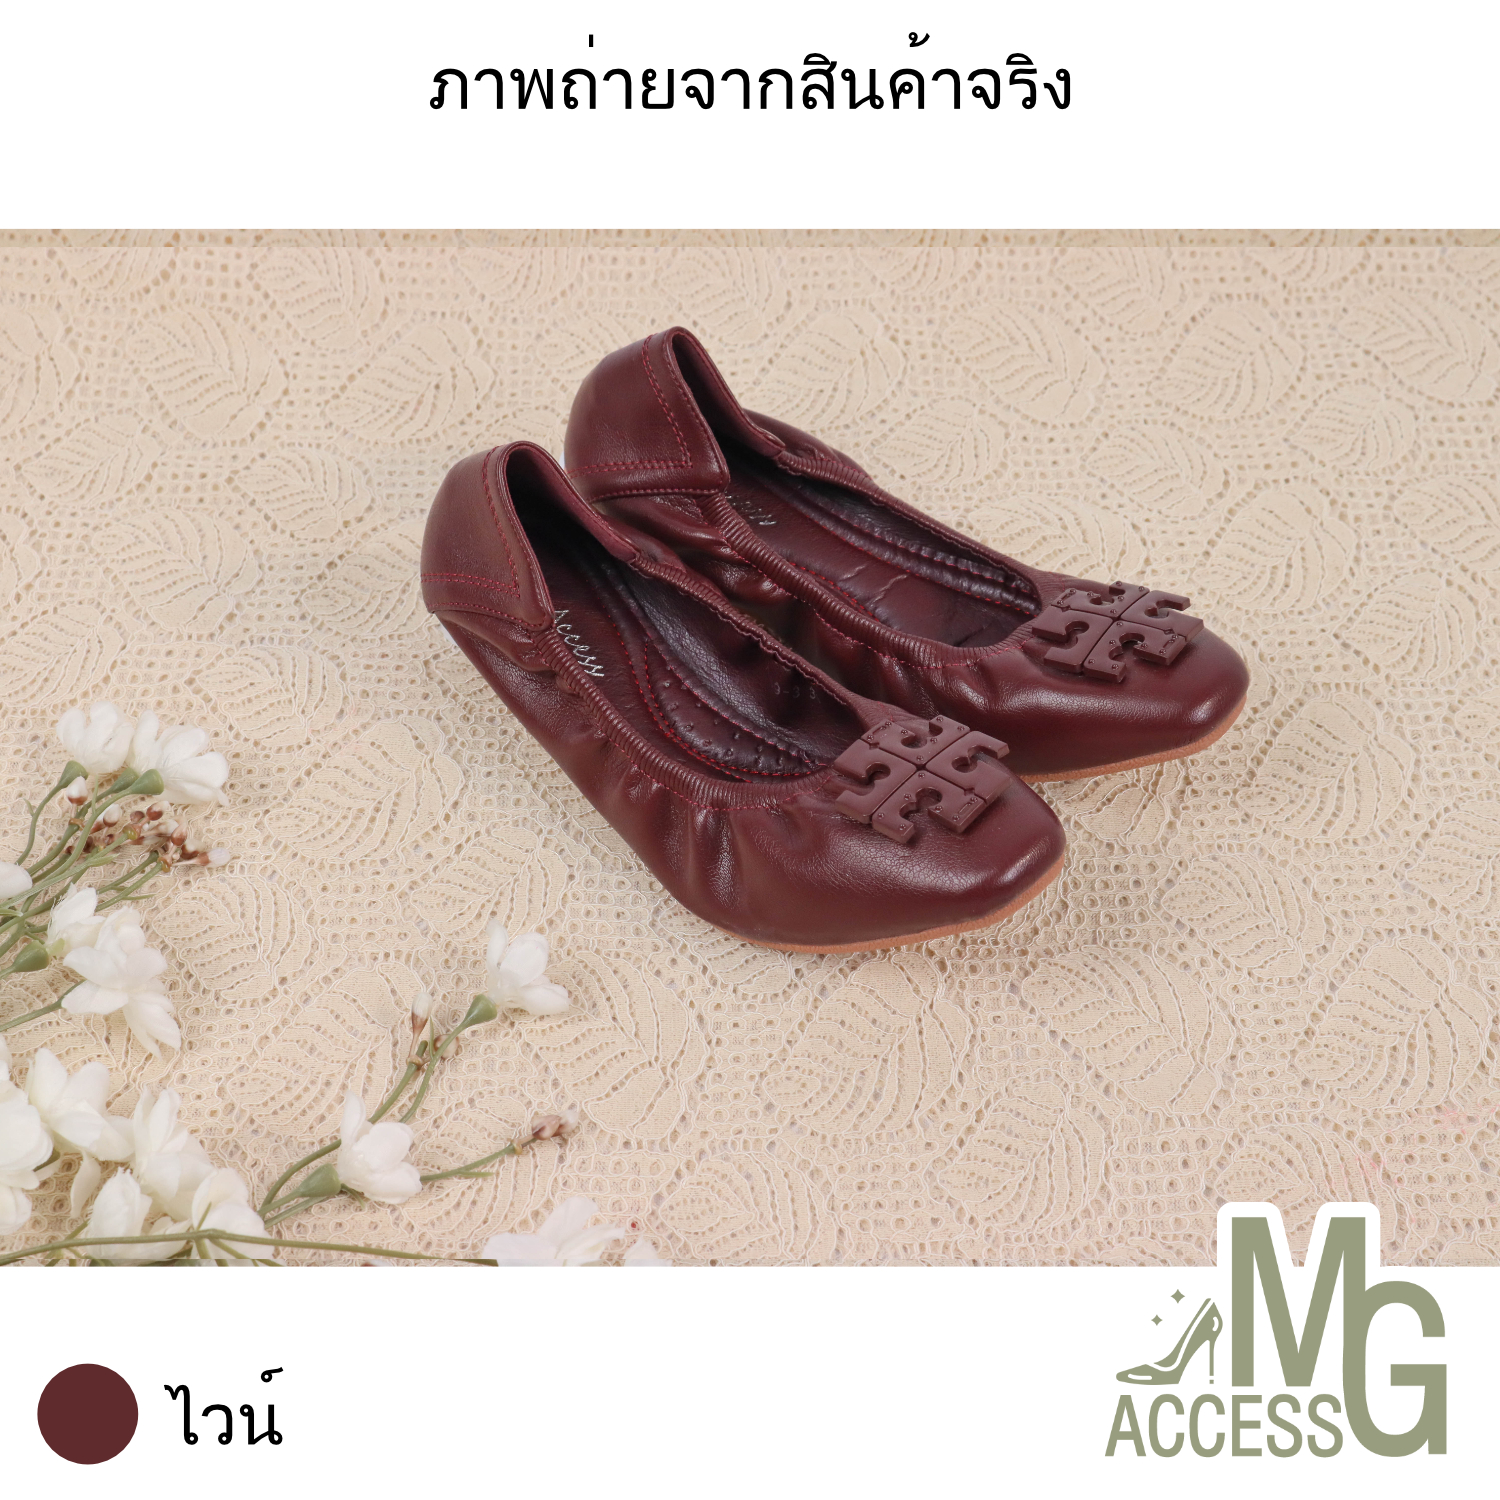 MG access สินค้าแท้ รองเท้าบัลเลต์ บัลเลต์ผู้หญิง รองเท้าบัลเลต์แฟชั่นผู้หญิง รหัสสินค้า A389-3